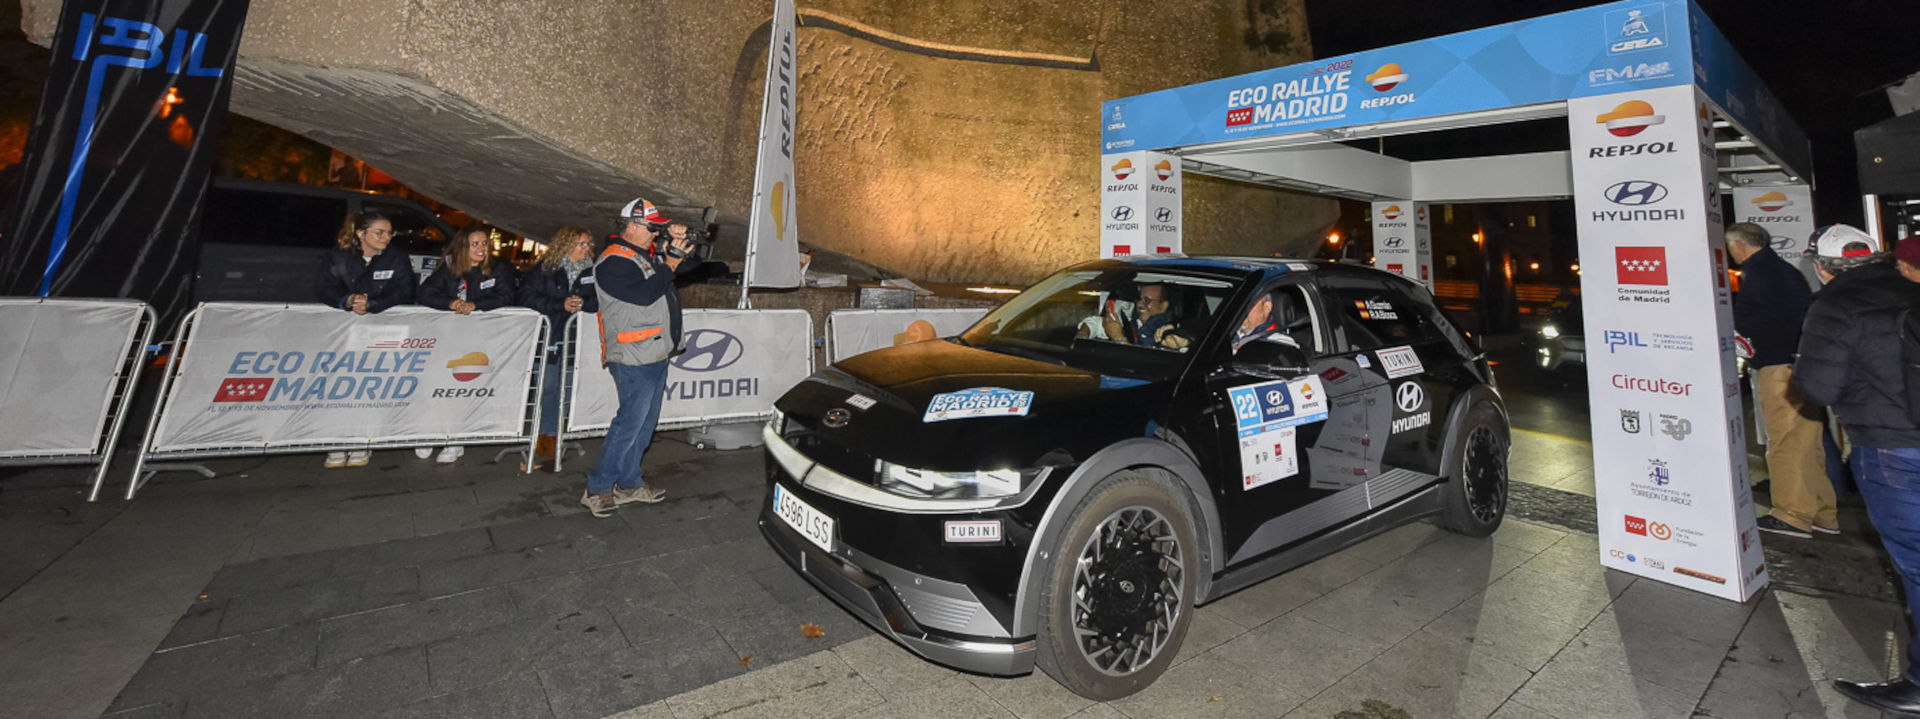 Hyundai Rallye Repsol Madrid 2022 Ceremonia 01 E2e